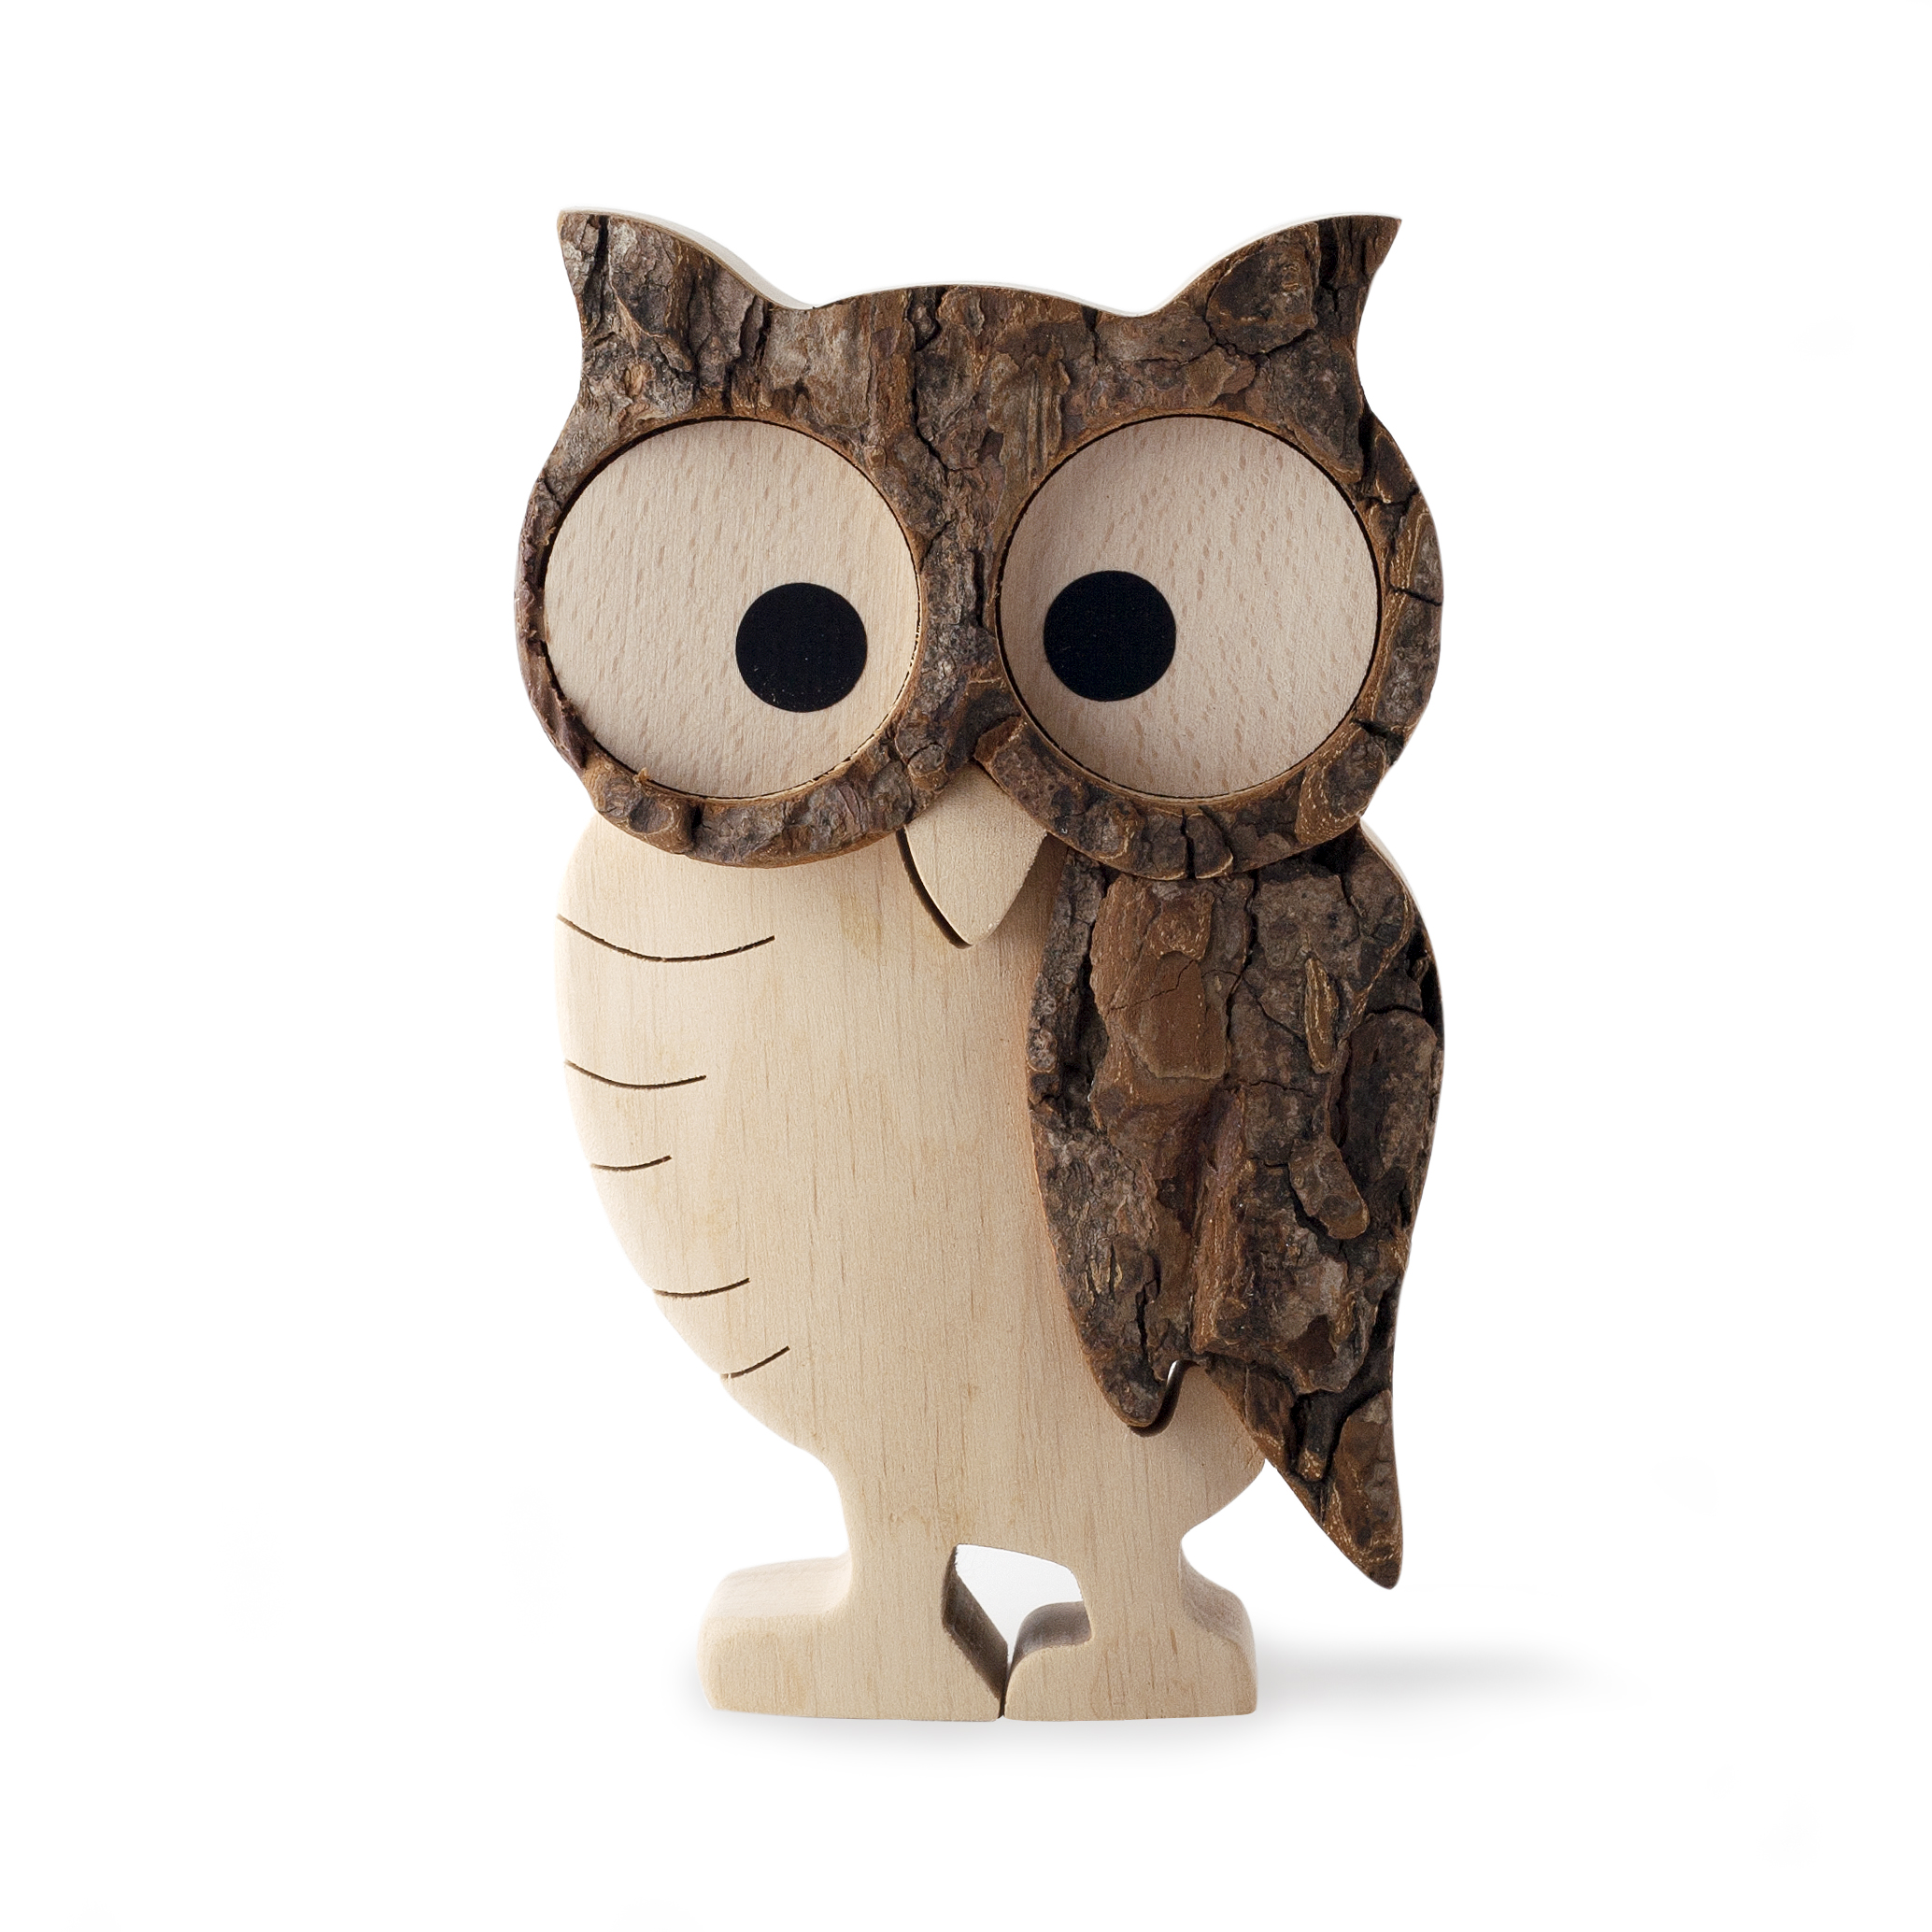 Rustic Wood Owl Figurine